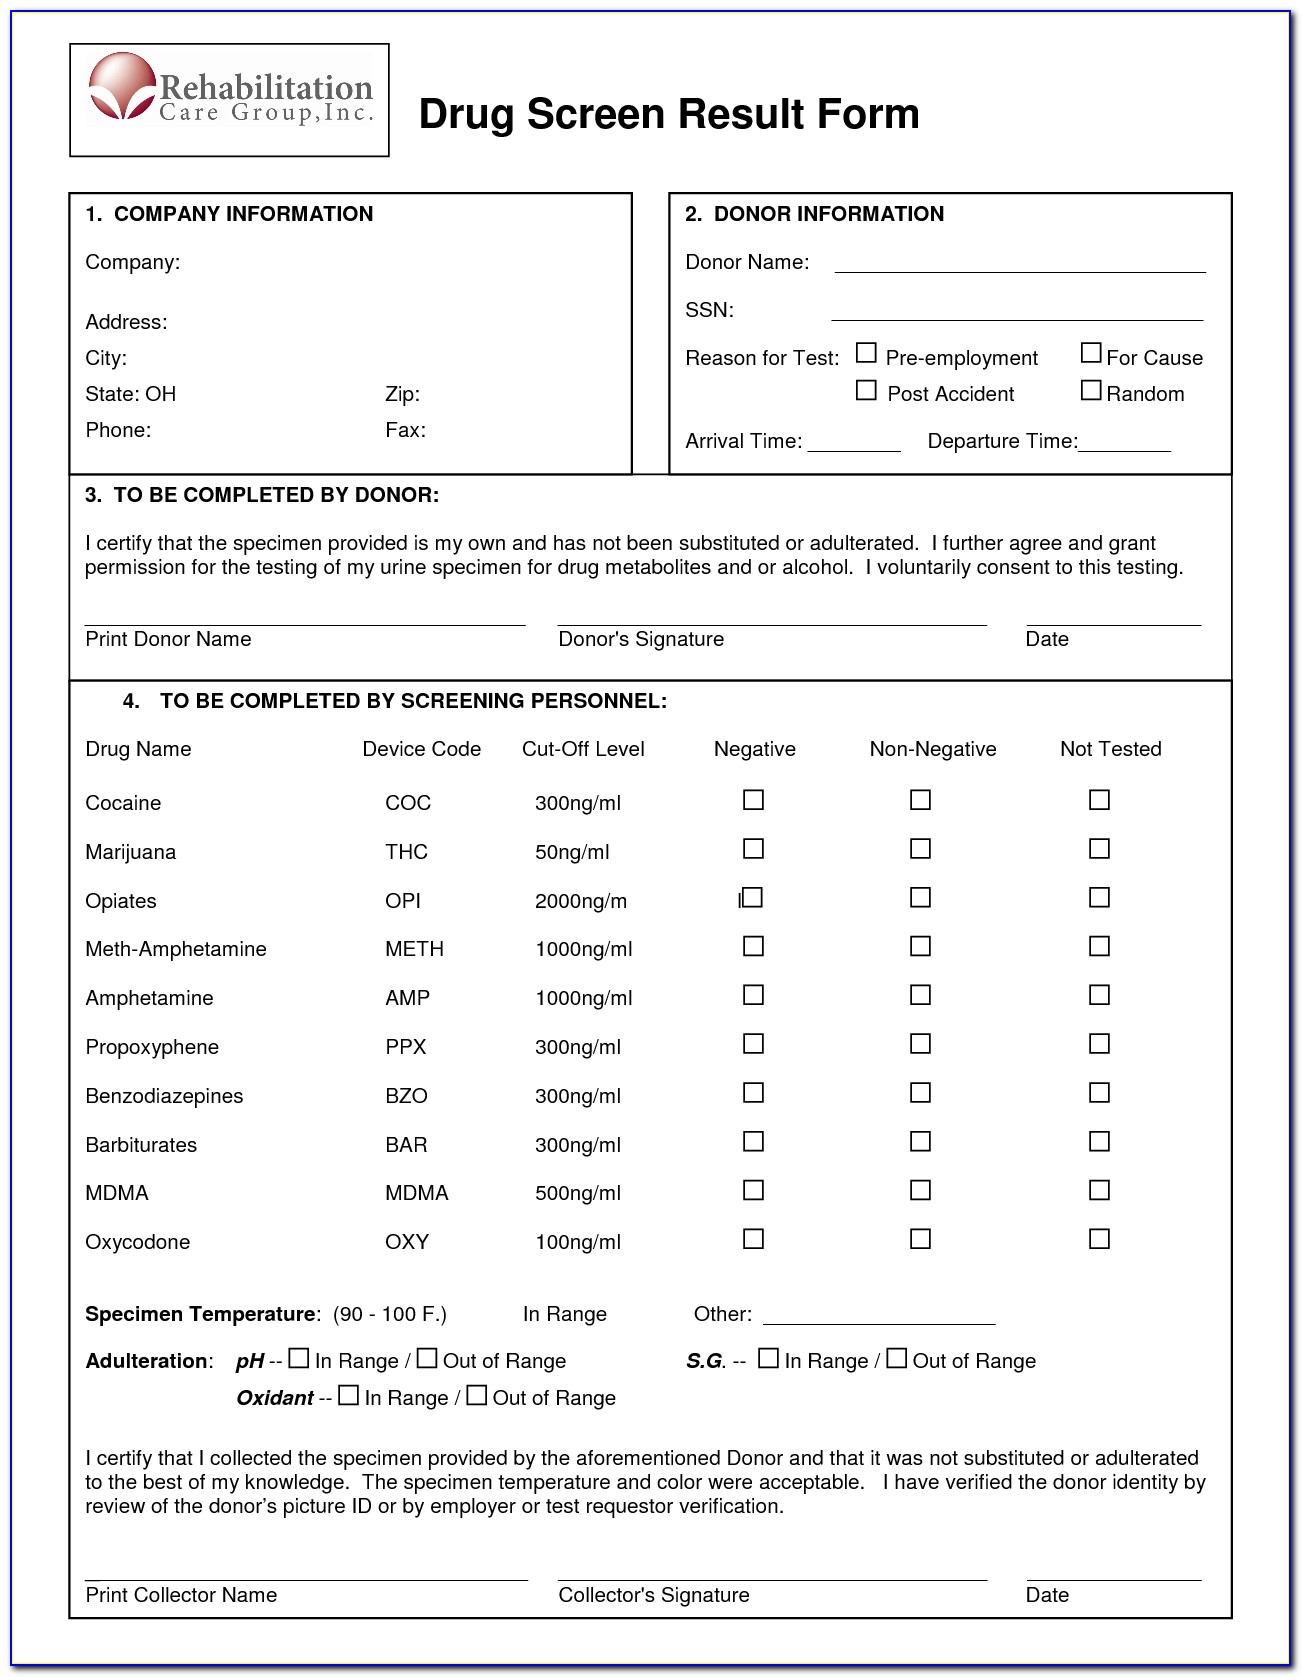 9 Drug Test Results Form Template, Drug Screen Form Template Free With Regard To Drug Test Results Form Template